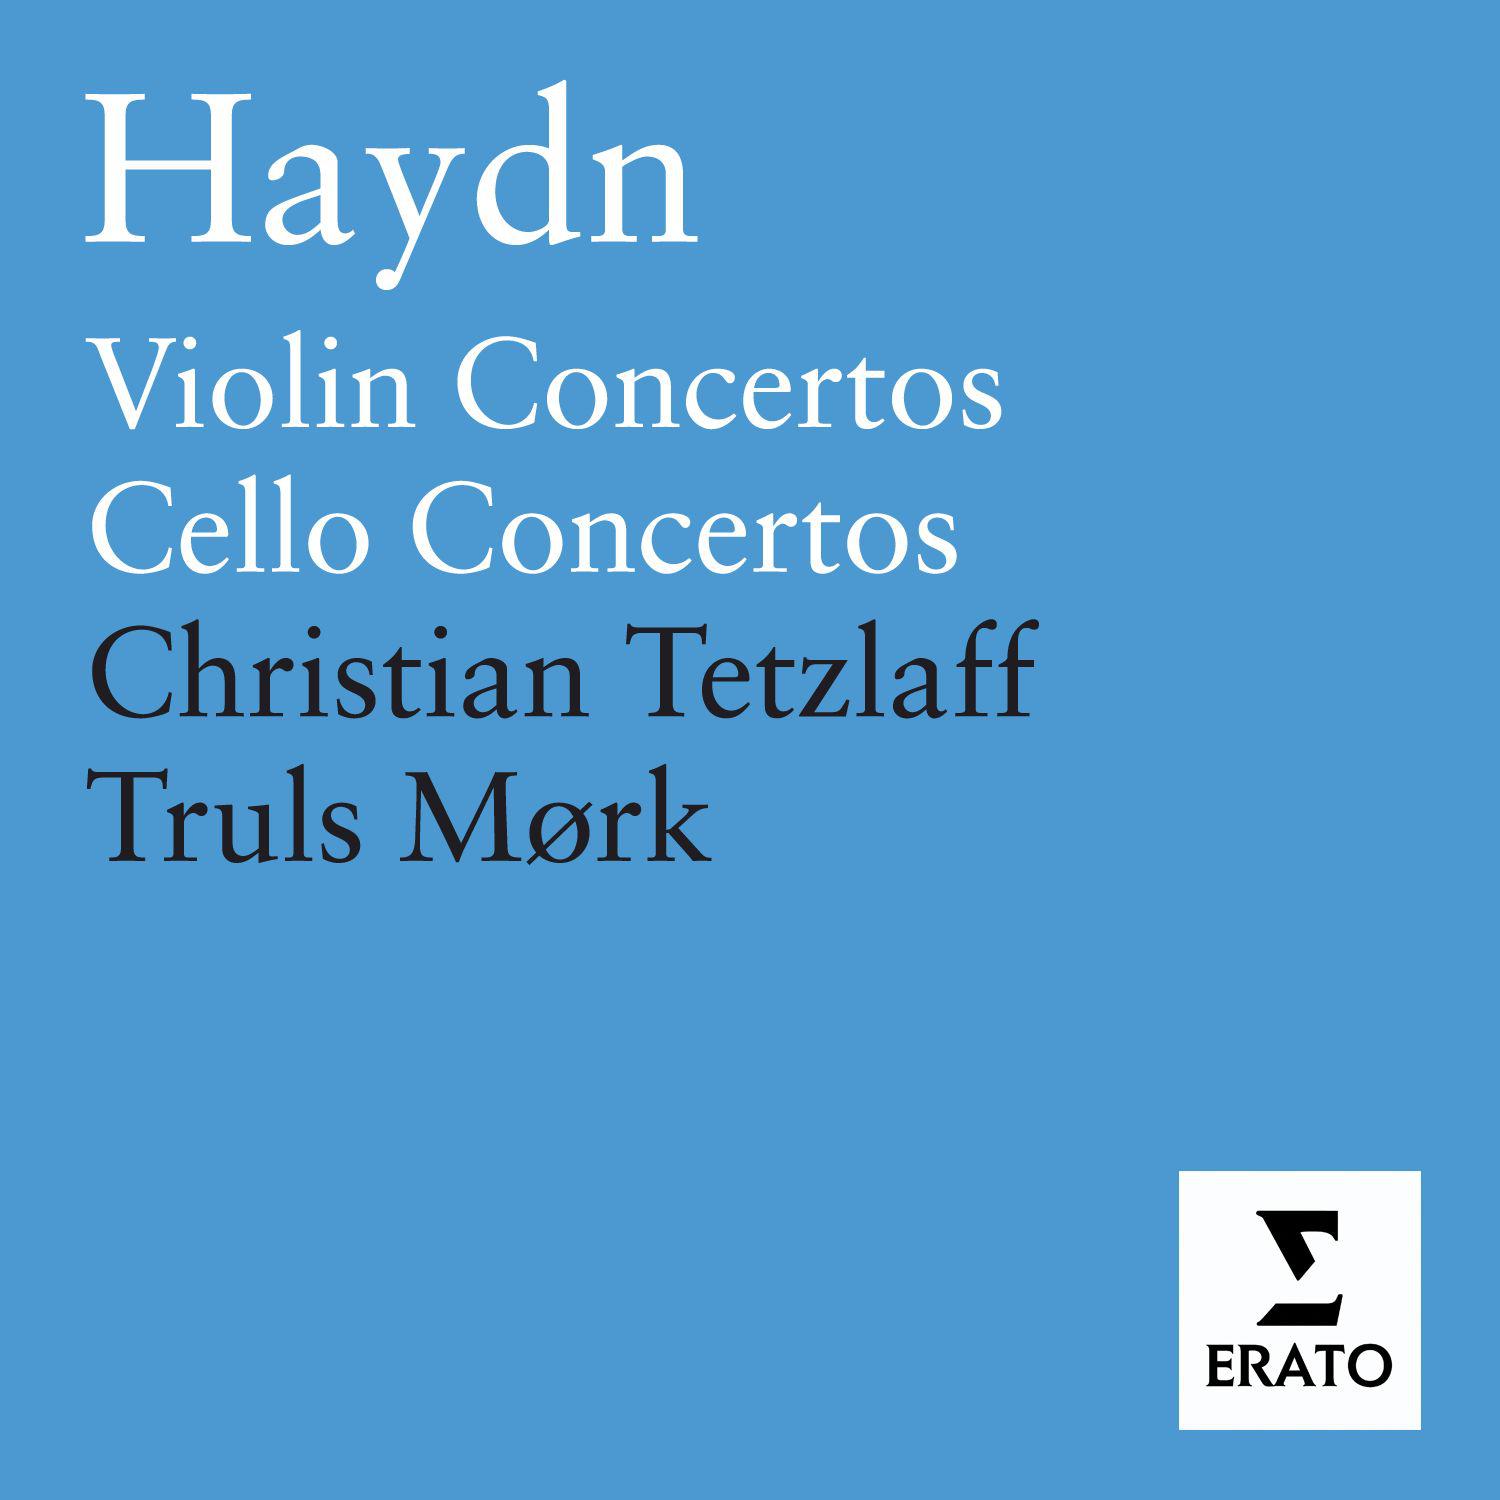 Cello Concerto No. 1 in C Major, Hob. VIIb/1: I. Moderato